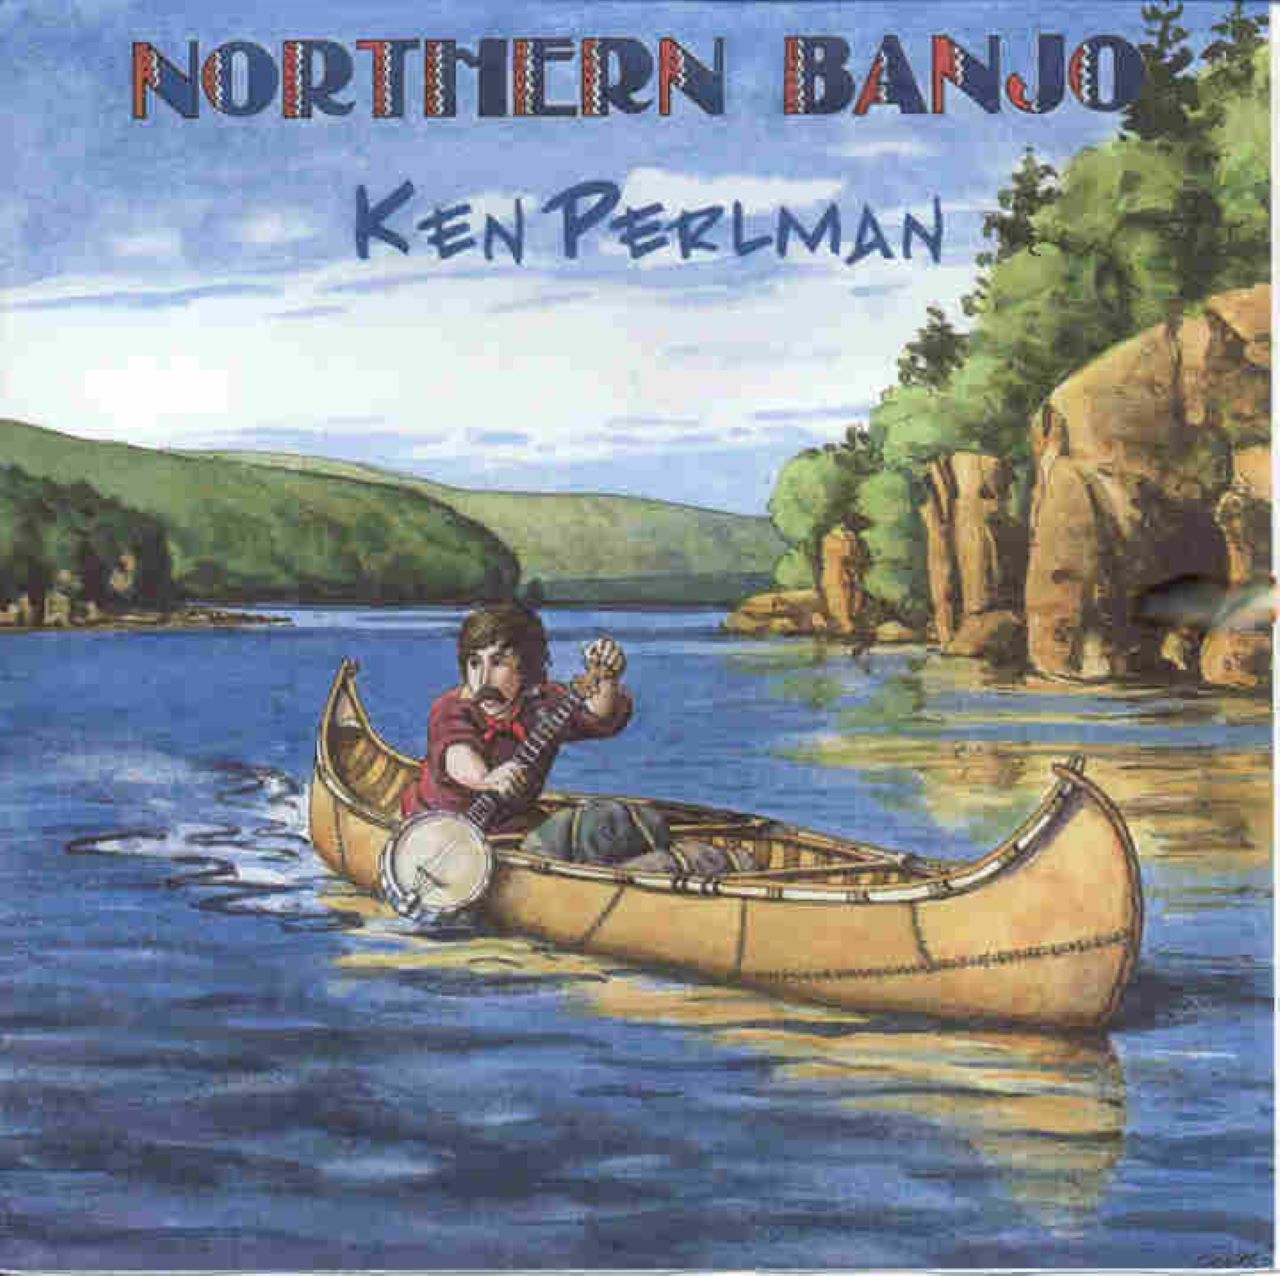 Ken Perlman - Northern Banjo cover album